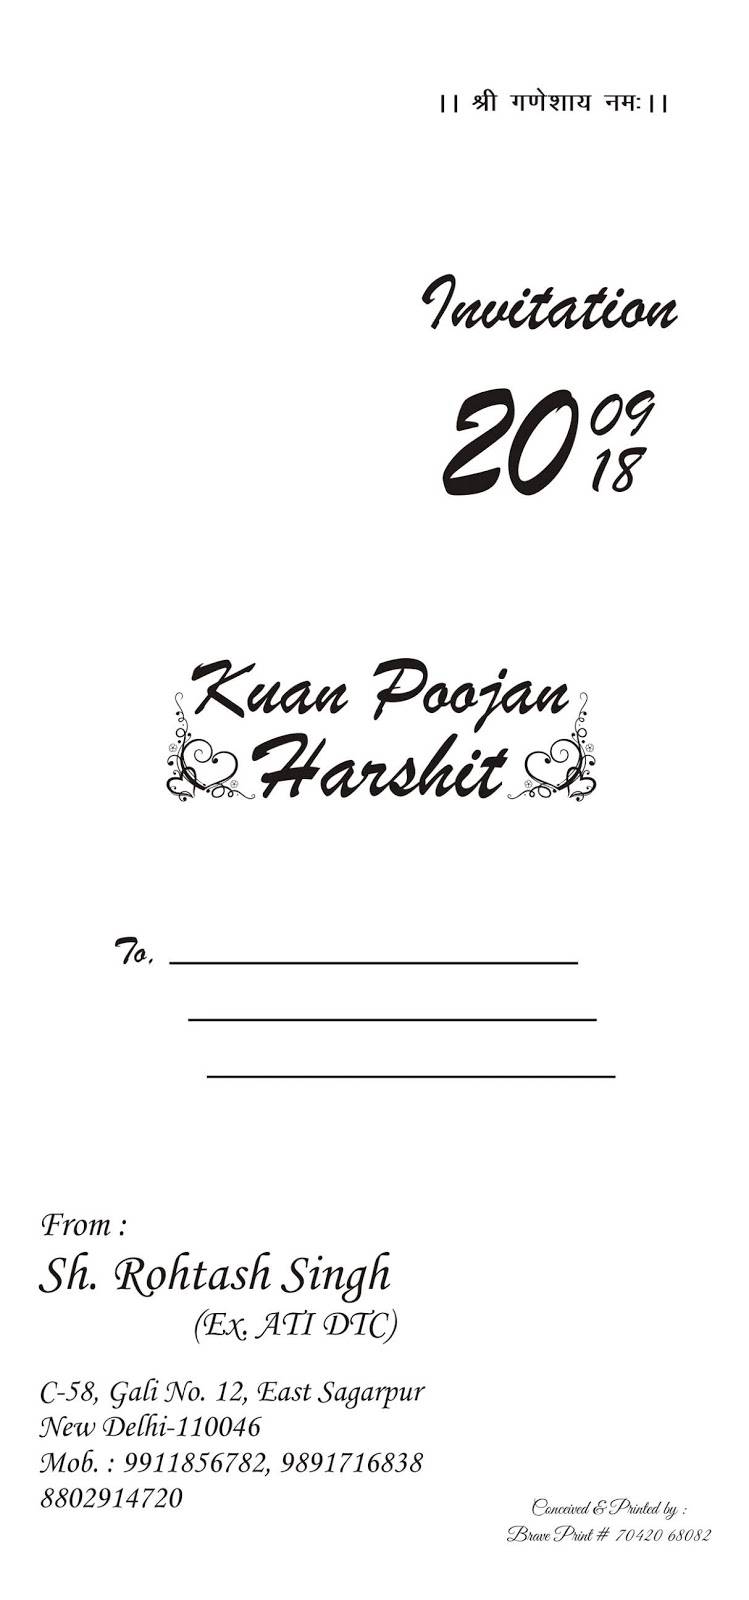 Kuan Poojan Invitation Card Design Rescar Innovations2019 Org